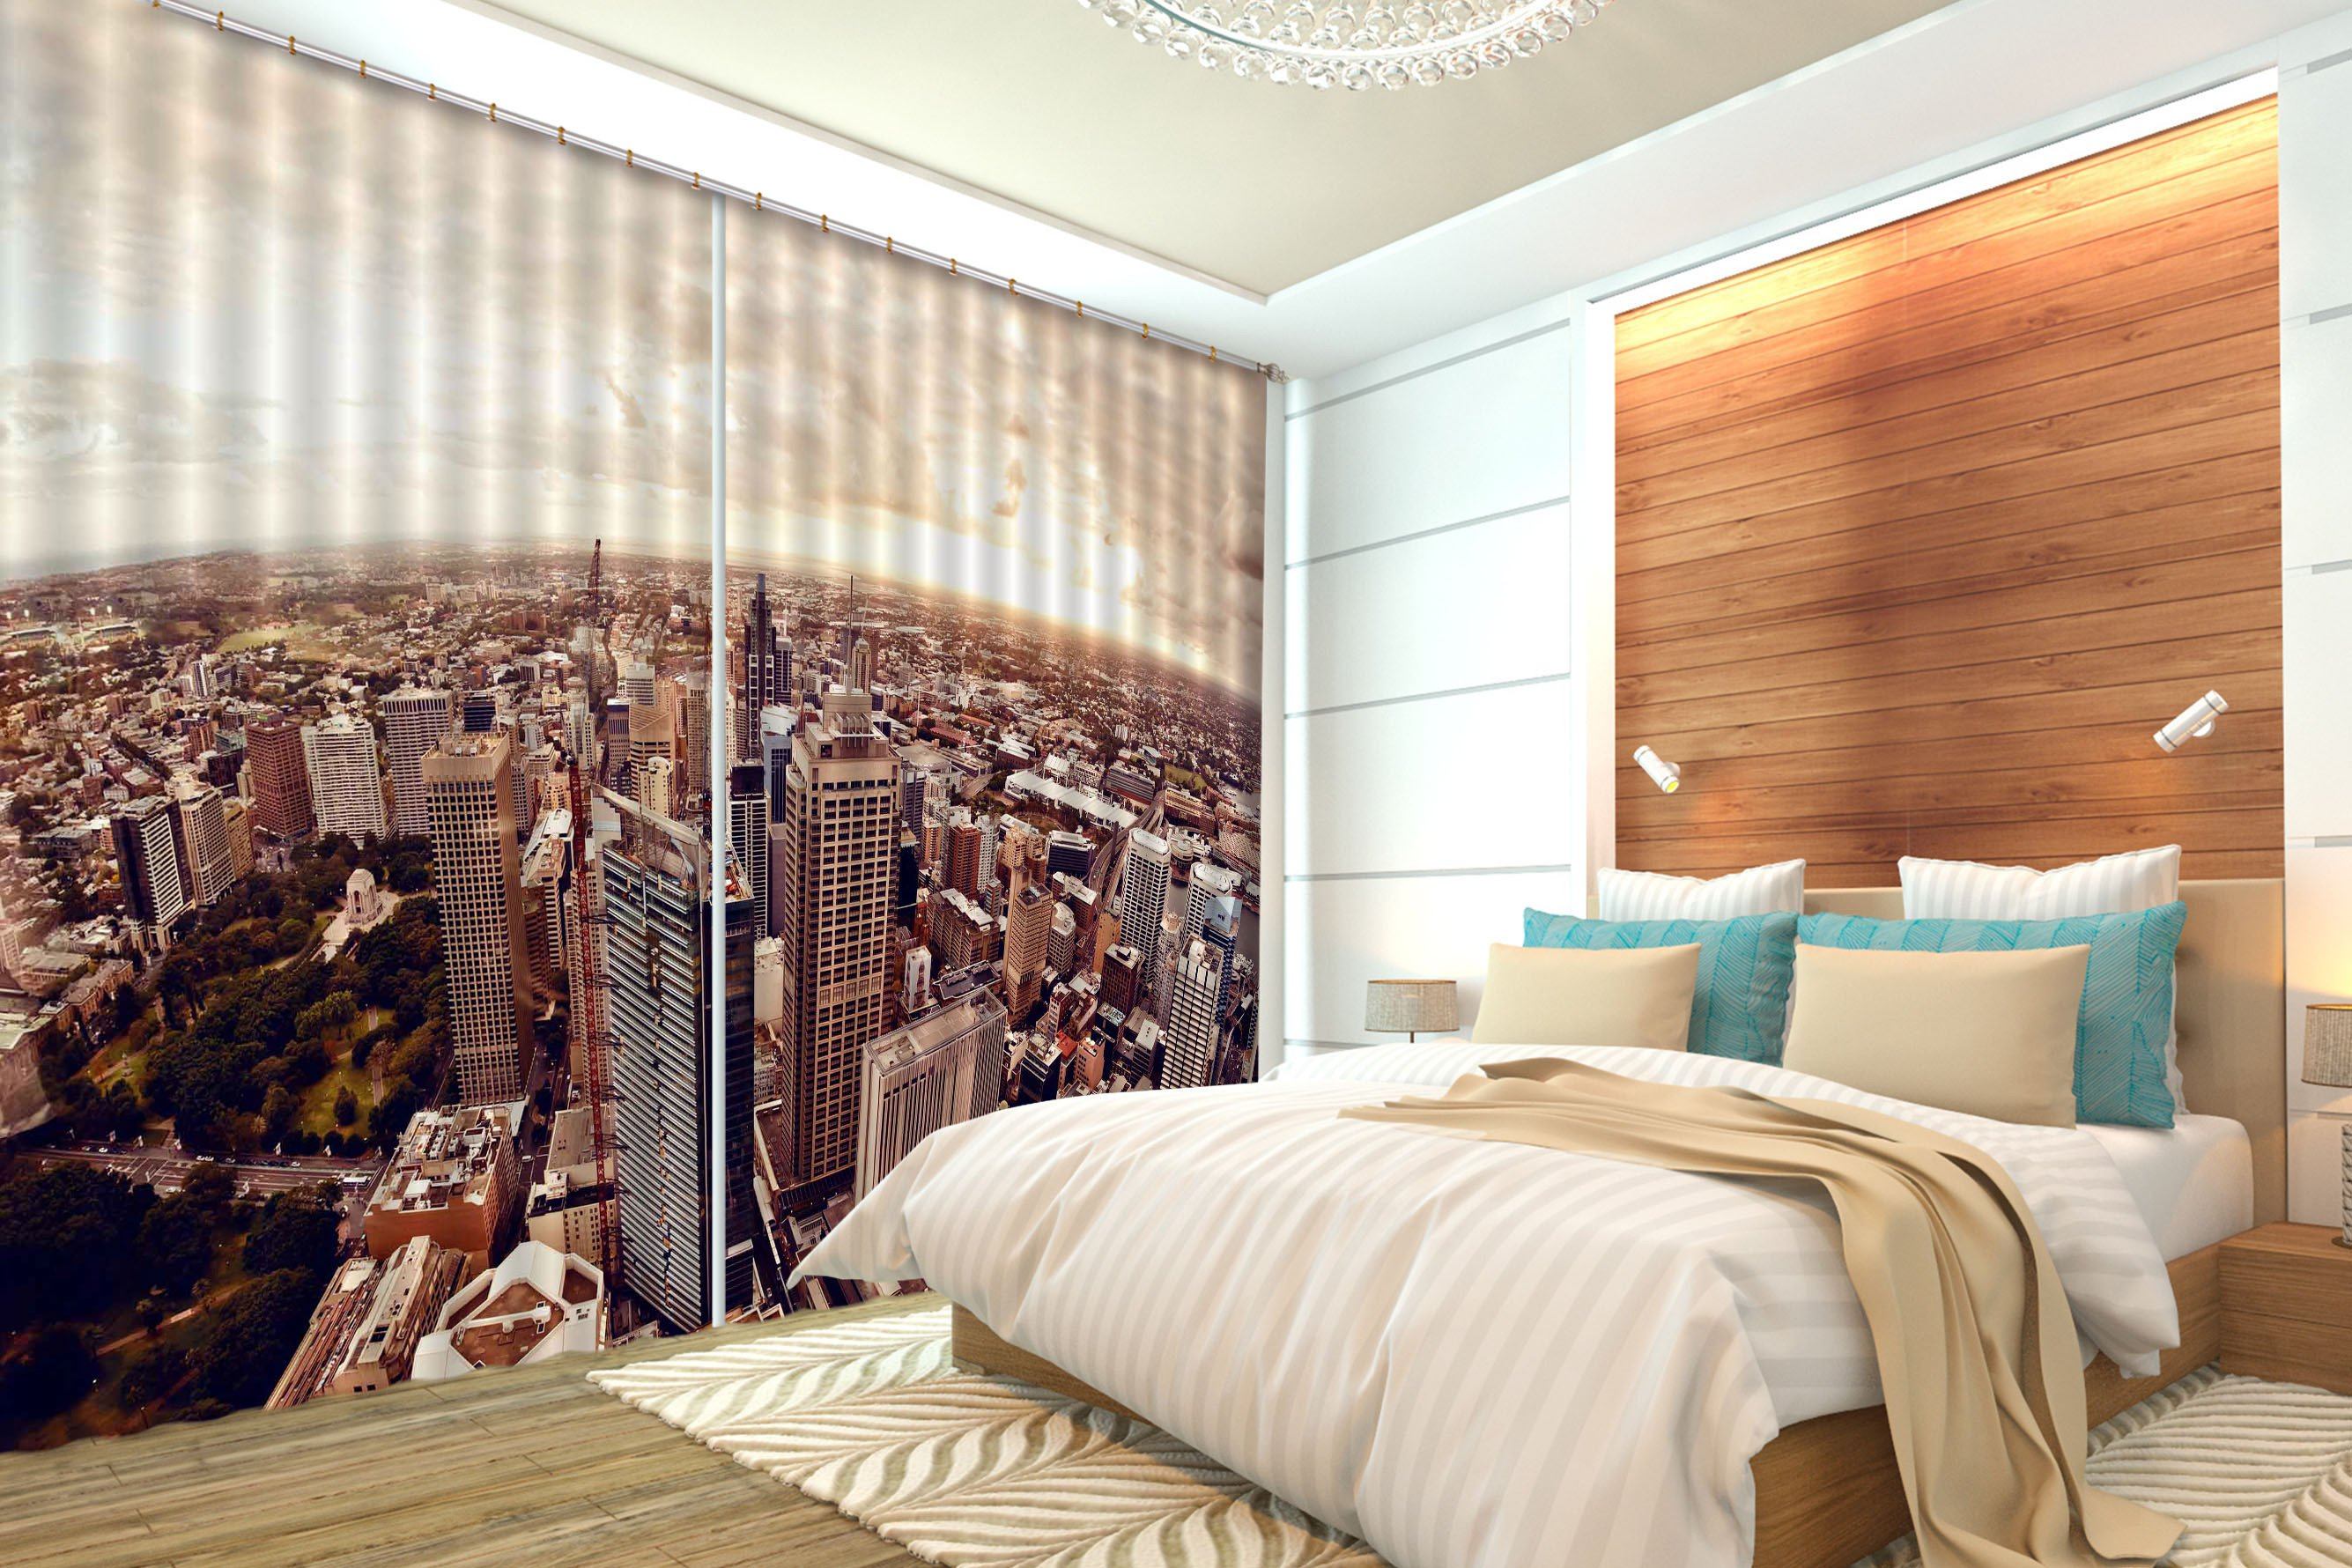 3D Vast City 488 Curtains Drapes Wallpaper AJ Wallpaper 